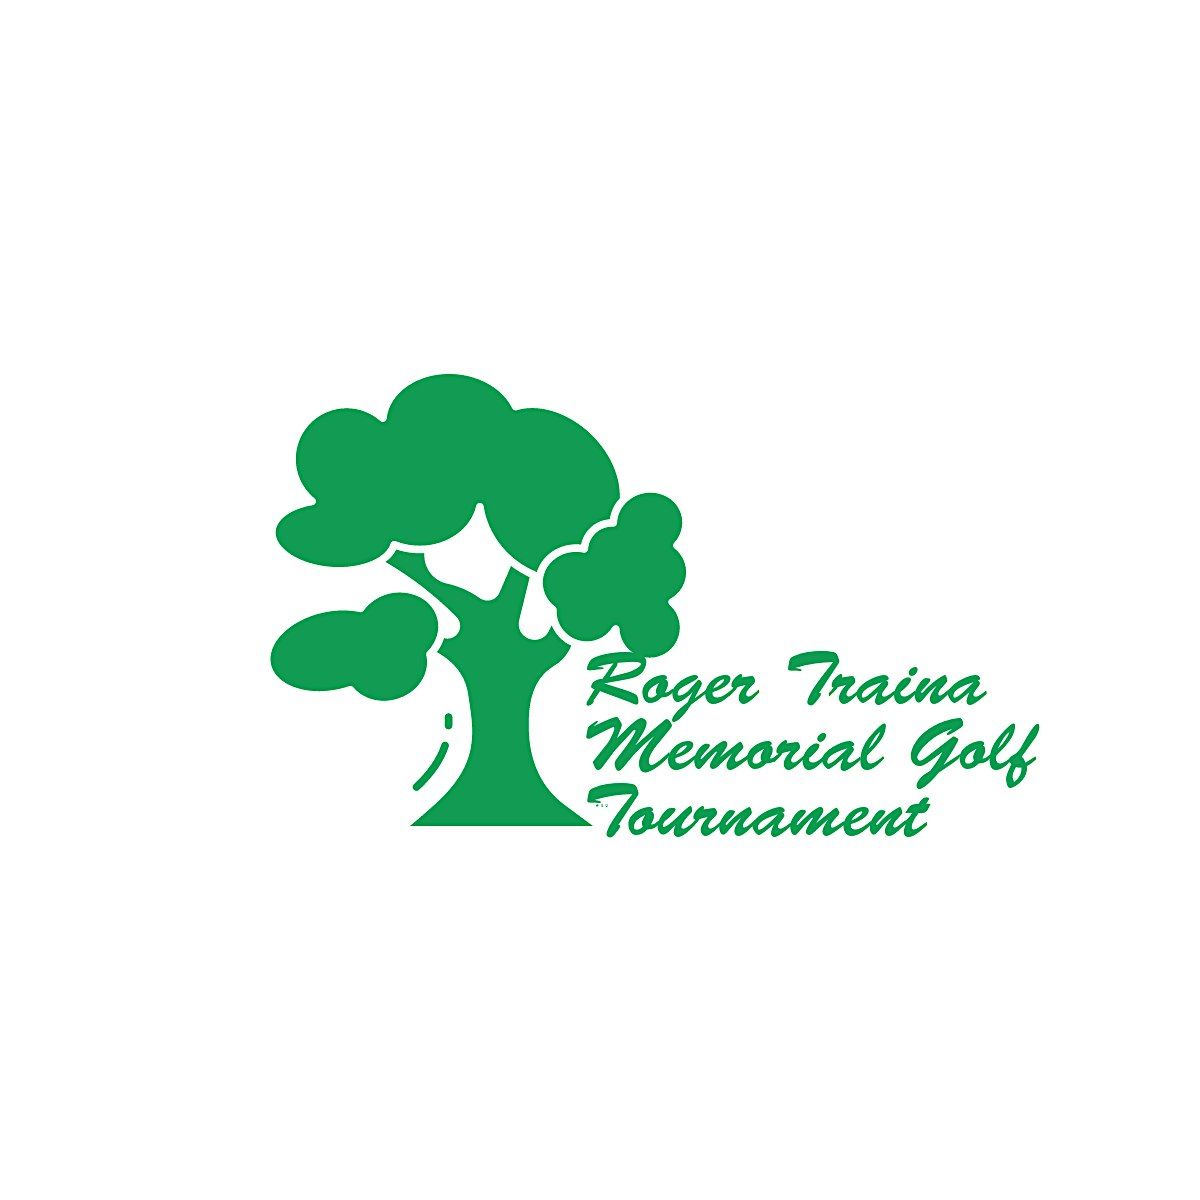 Roger Traina Memorial Golf Tournament